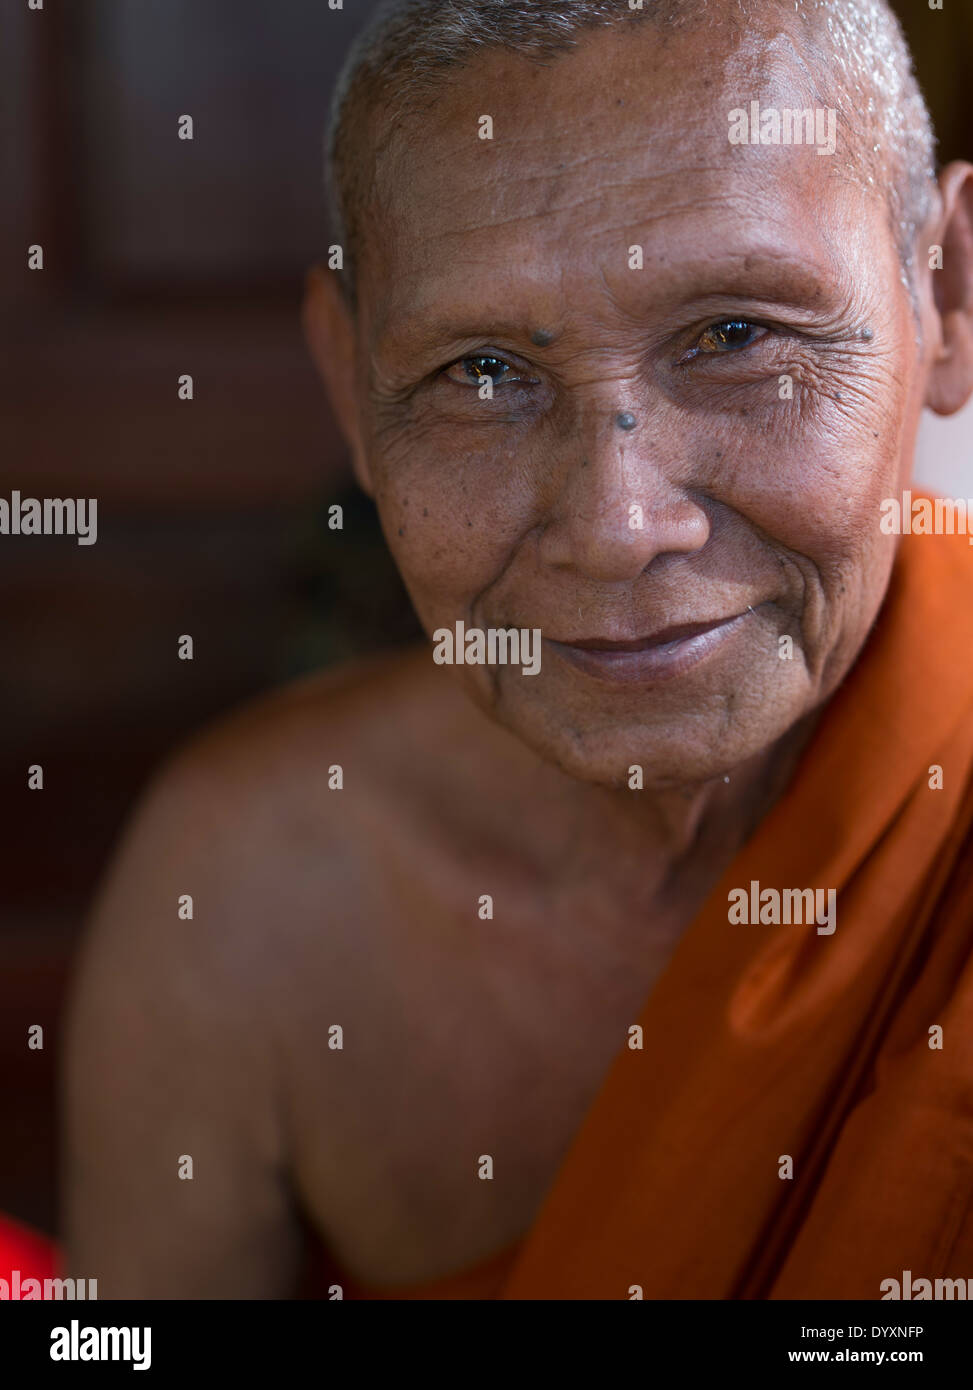 Le moine bouddhiste à Kompong Pluk village flottant près de Siem Reap, Cambodge Banque D'Images